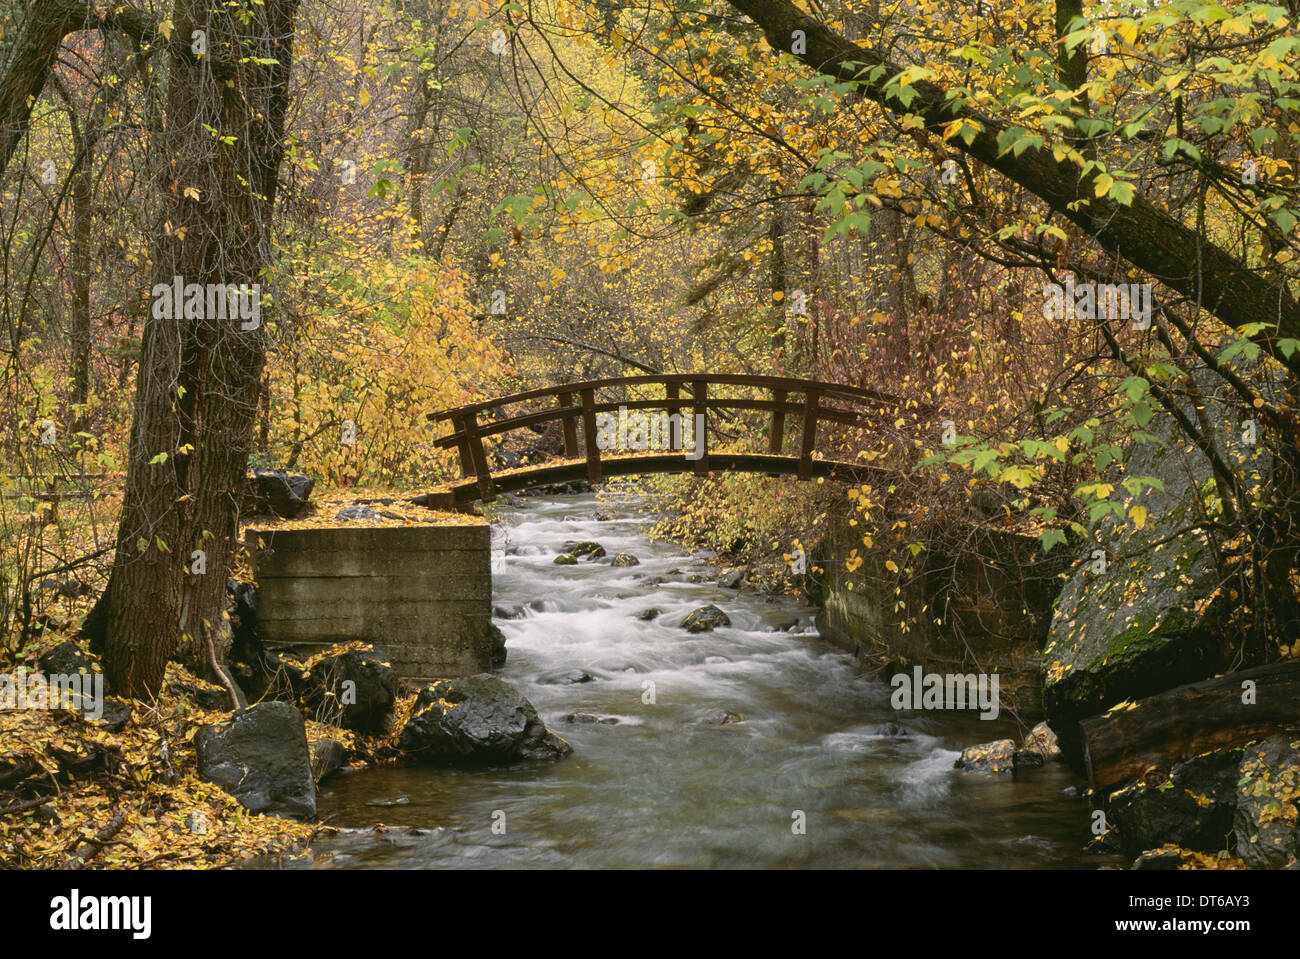 Une rivière qui traverse American Fork Canyon. Petit pont en bois. Feuillage de l'automne, et les feuilles tombées. Banque D'Images